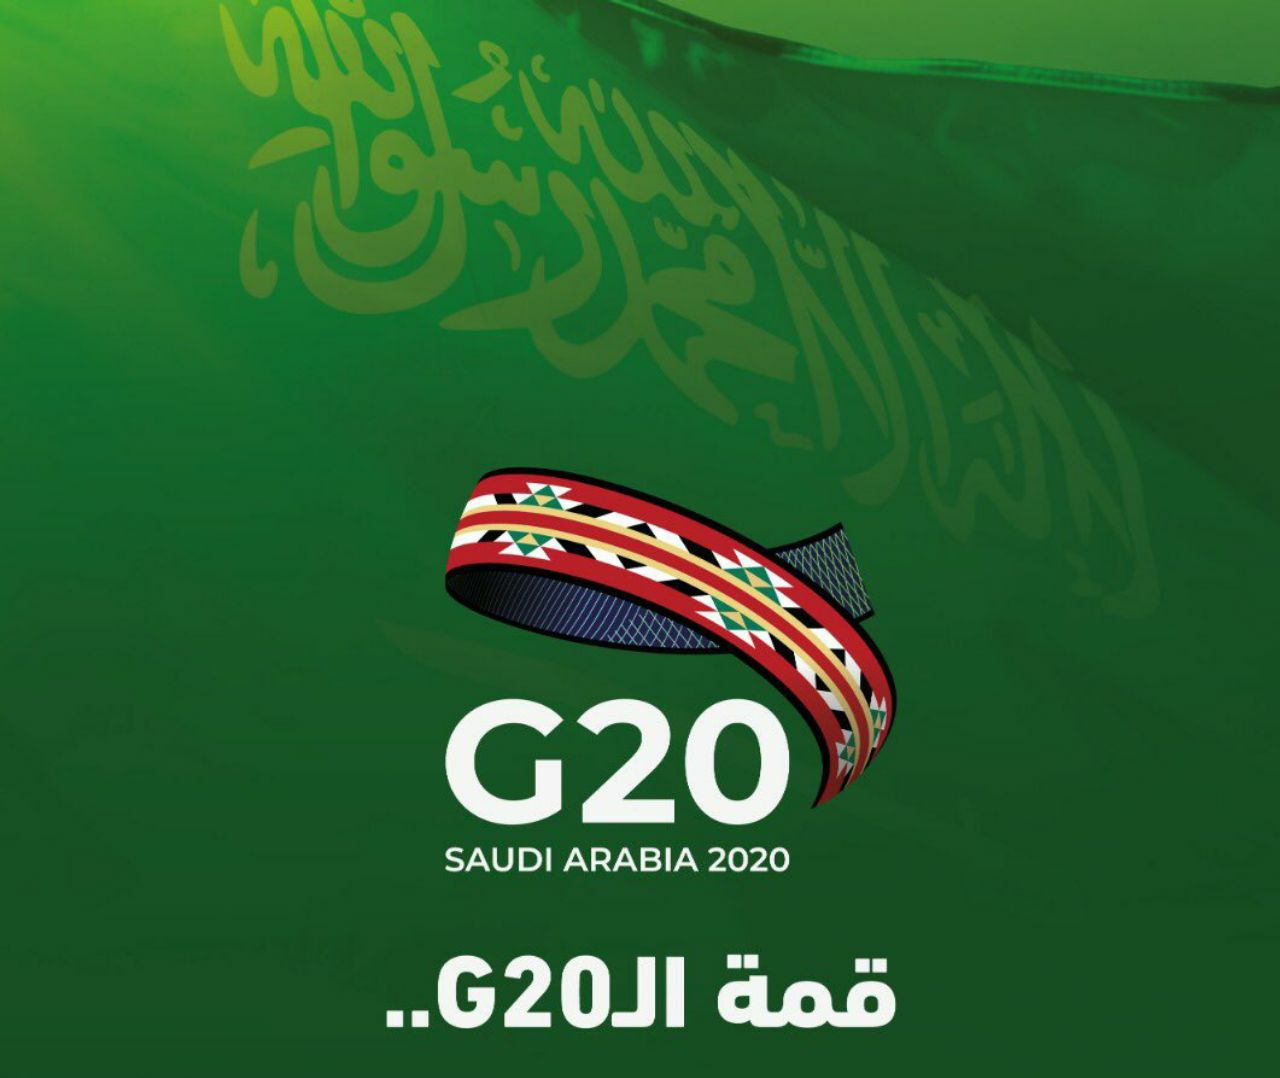 9 إستراتيجيات لتمكين الإنسان عام رئاسة السعودية مجموعة العشرين